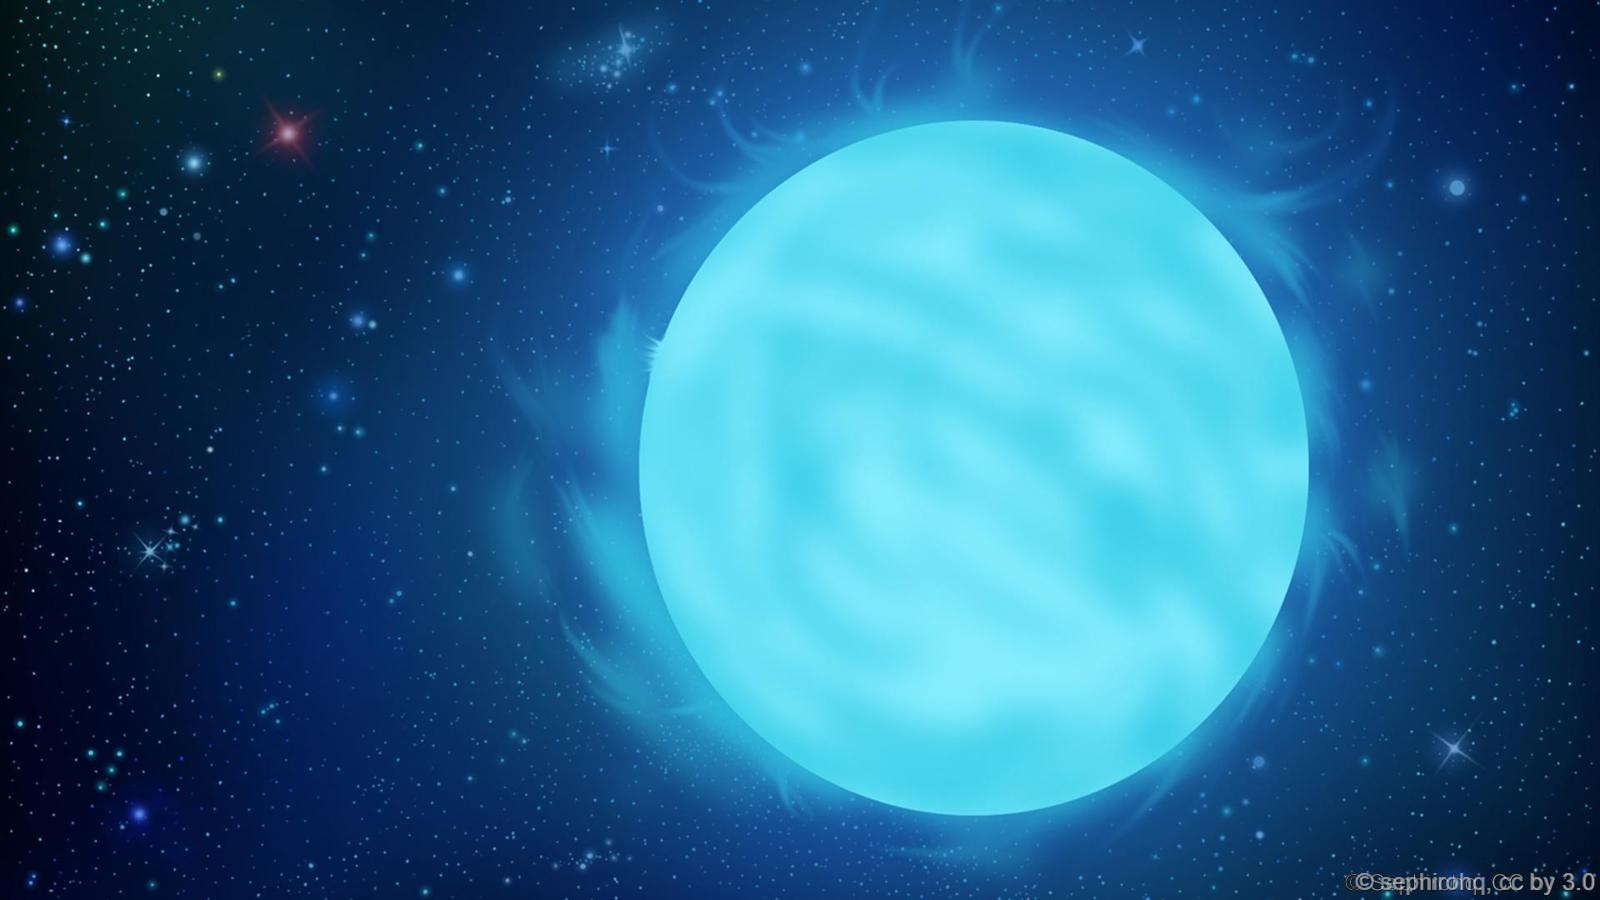 Голубой сверхгигант. R136a1 самая массивная звезда. Звезда Вольфа Райе r136a1. Самая большая звезда r136a1. Планета r136a1.